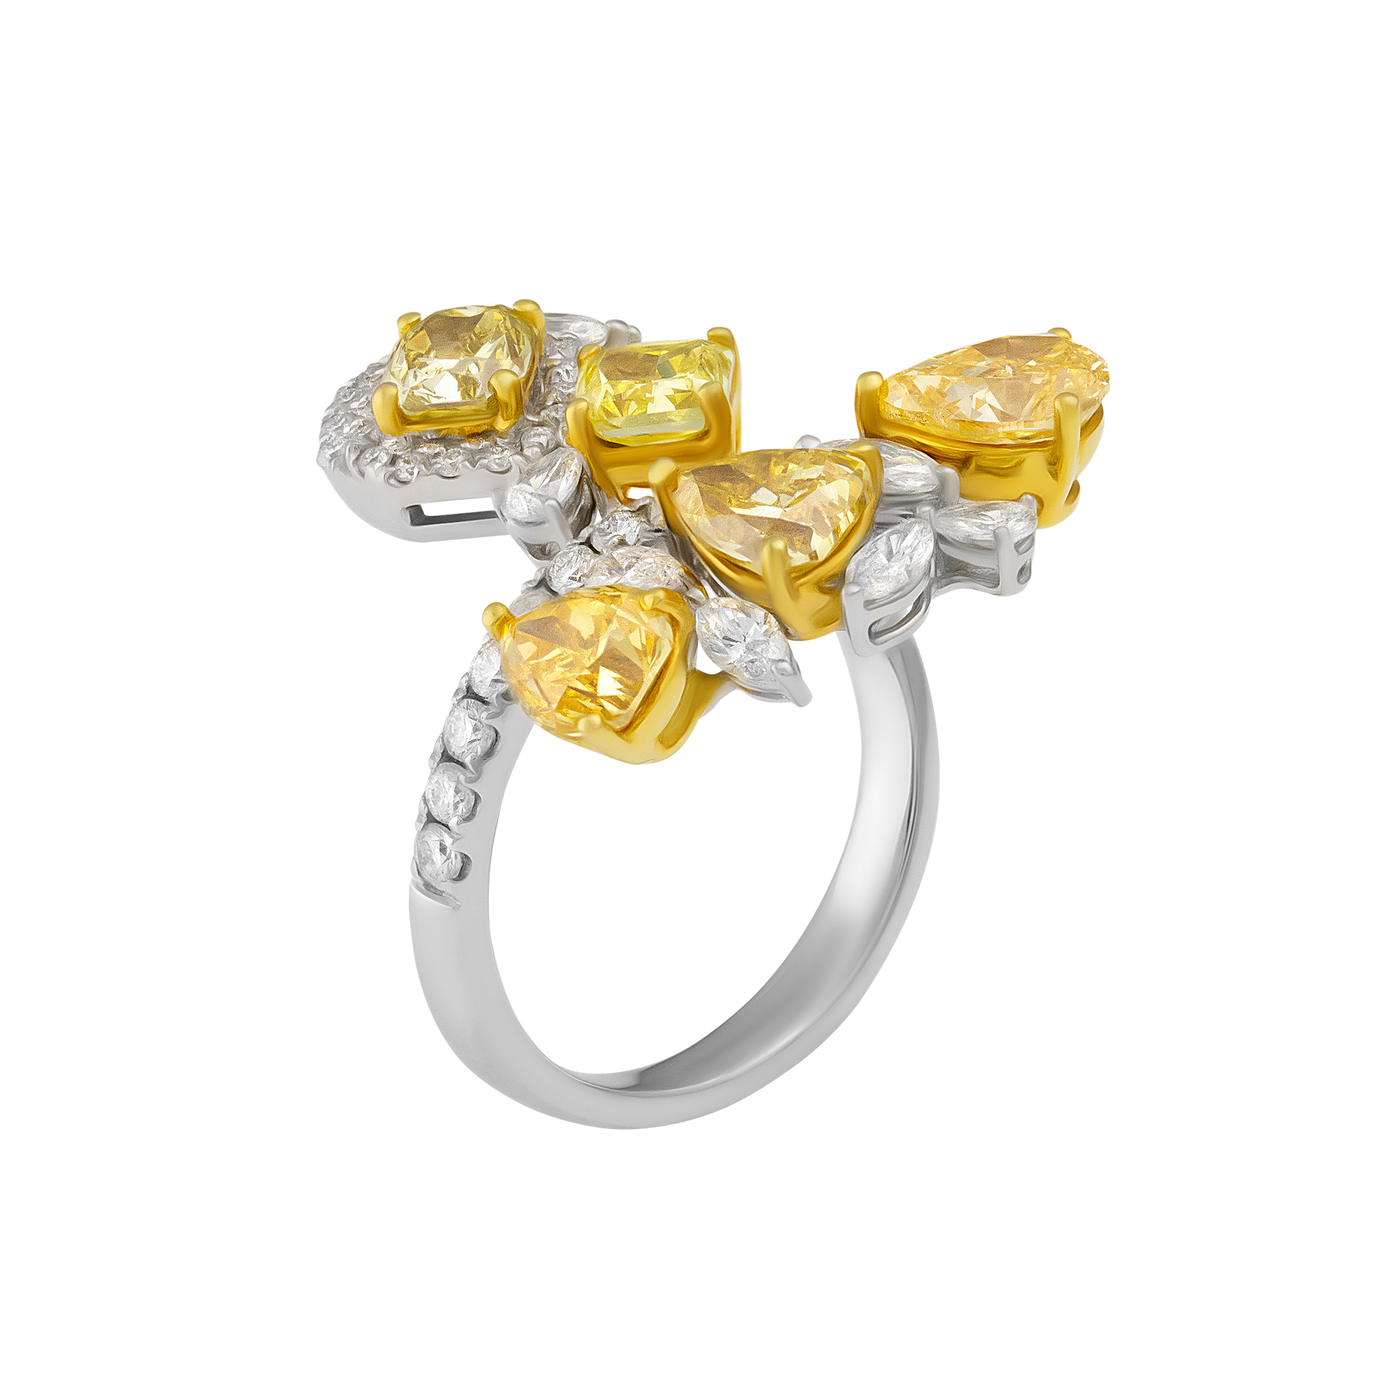 ECJ Collection 18K White Gold Yellow & White GIA Diamonds Ring